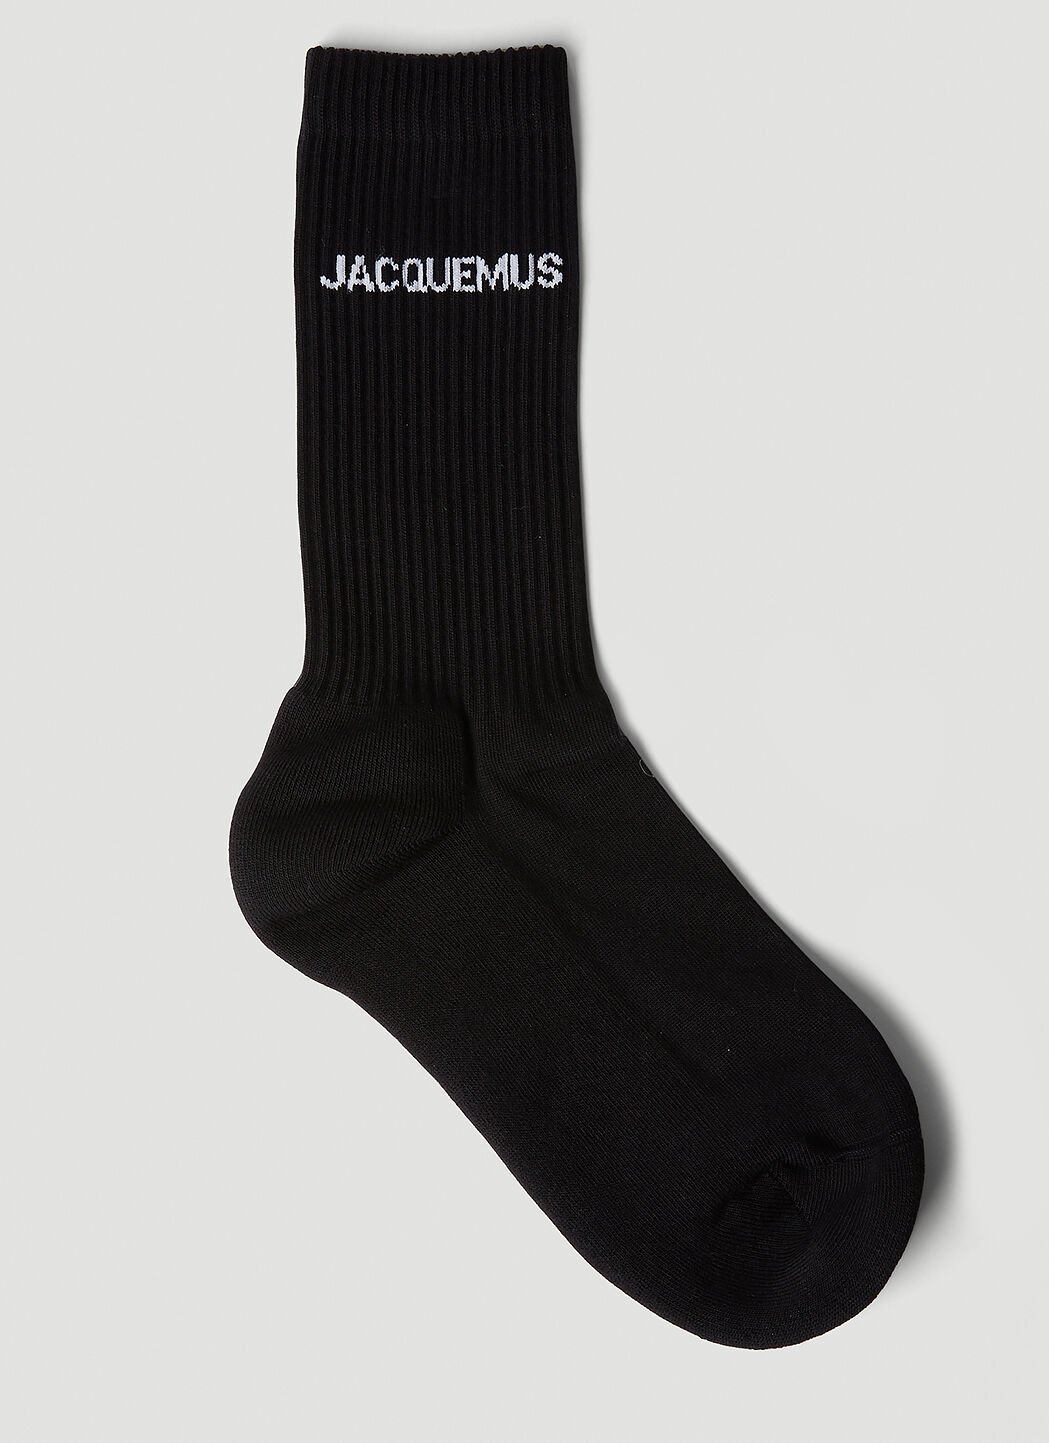 Veja Les Chaussettes Socks White vej0352024